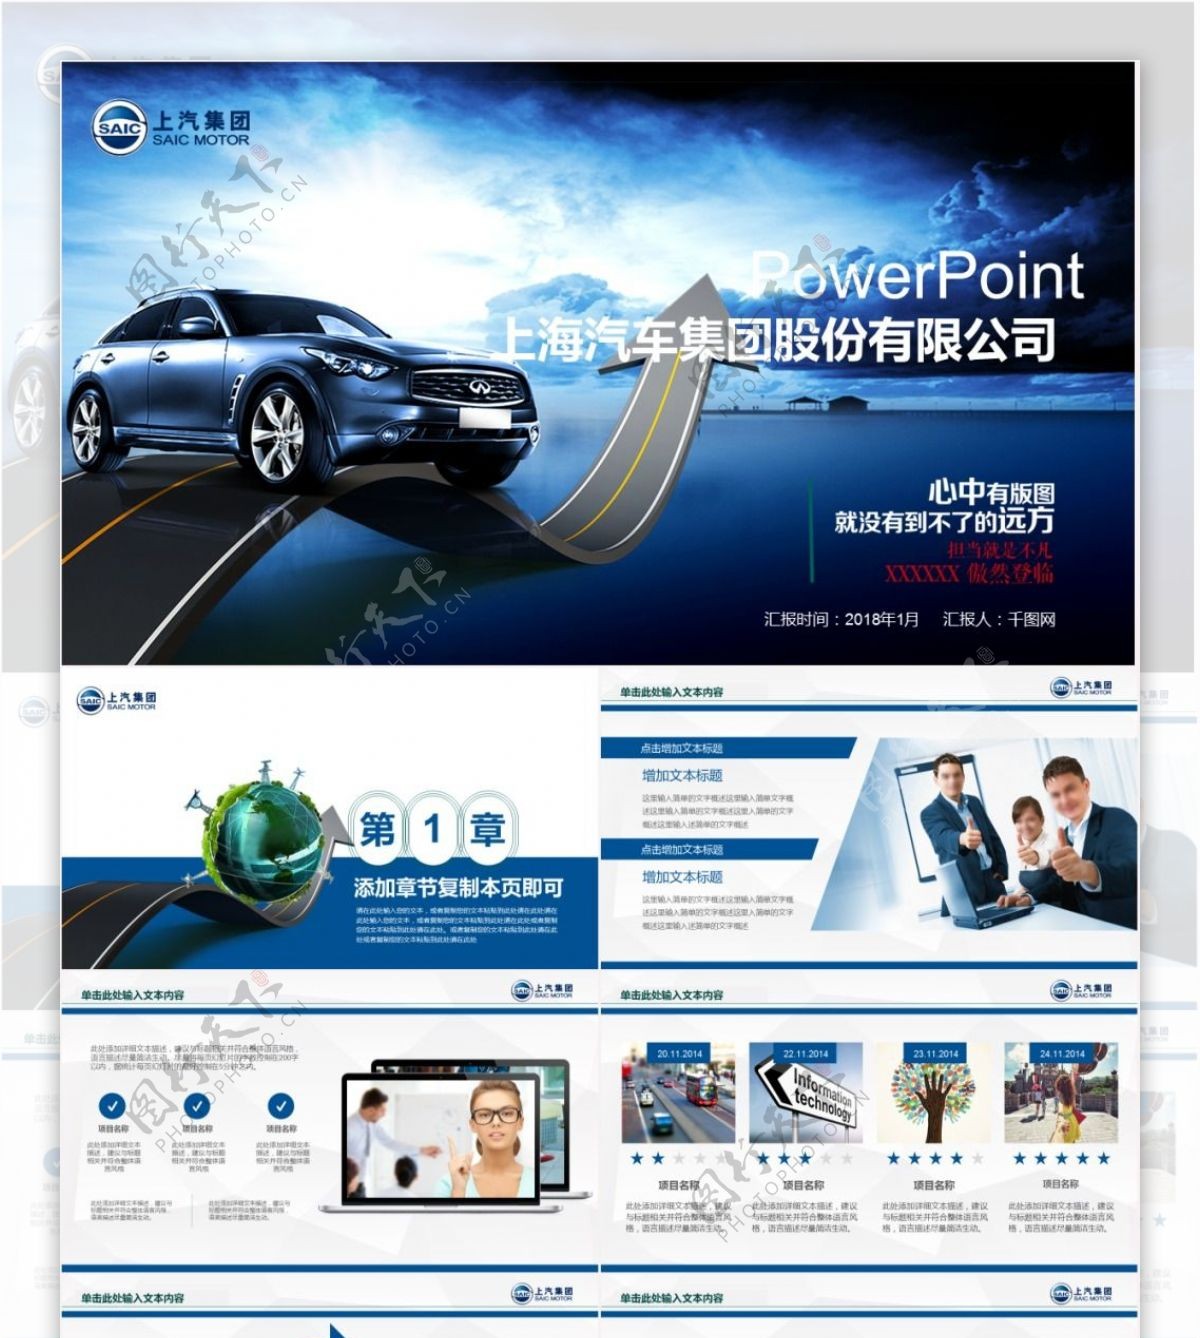 上海汽车集团汽车营销品牌宣传ppt模板